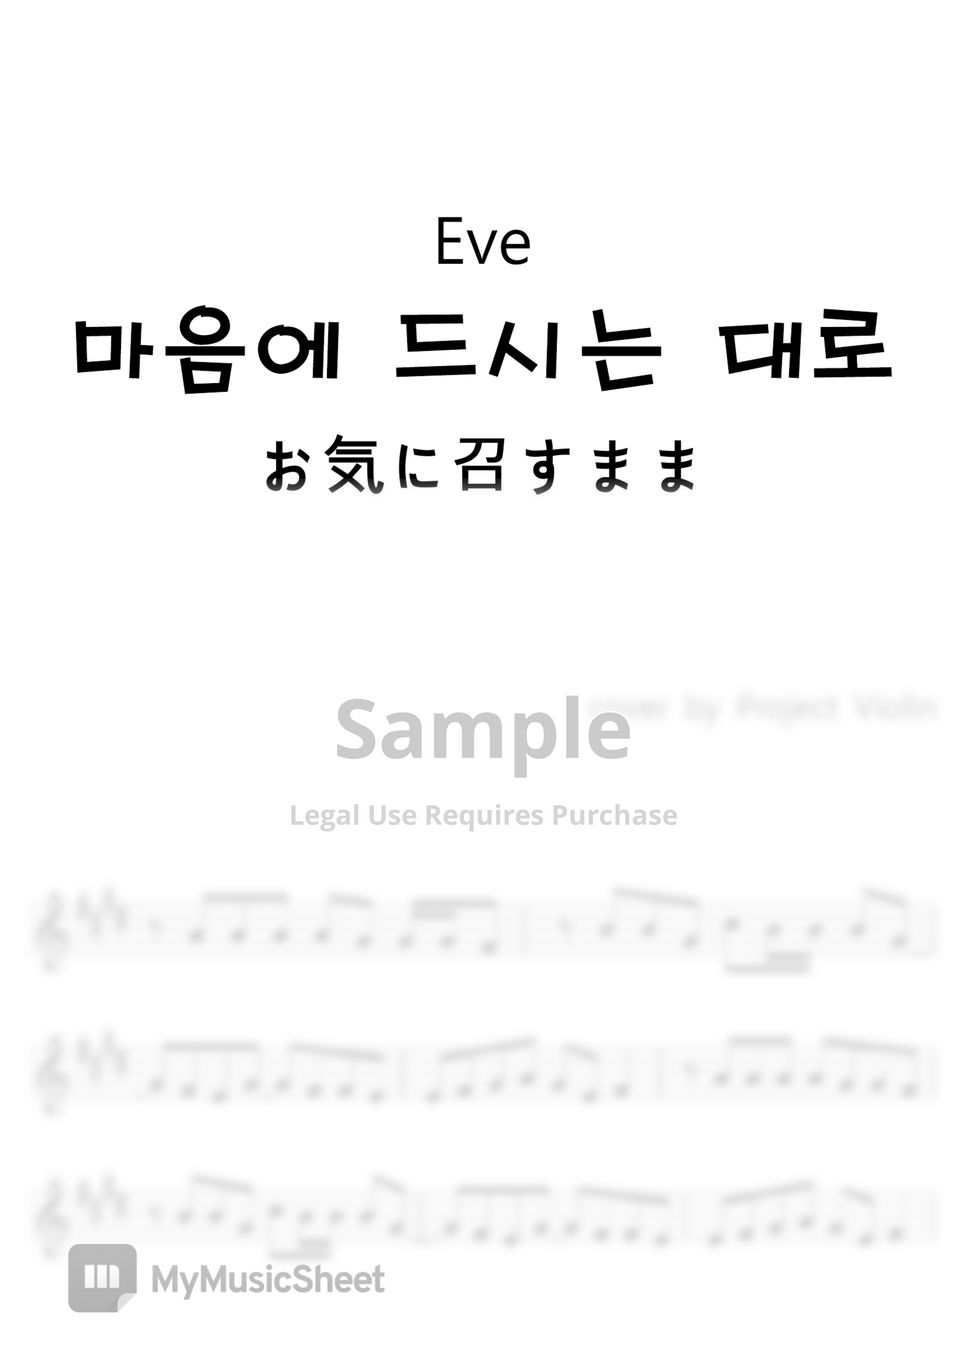 Eve - 마음에 드시는 대로(お気に召すまま) by Project Violni